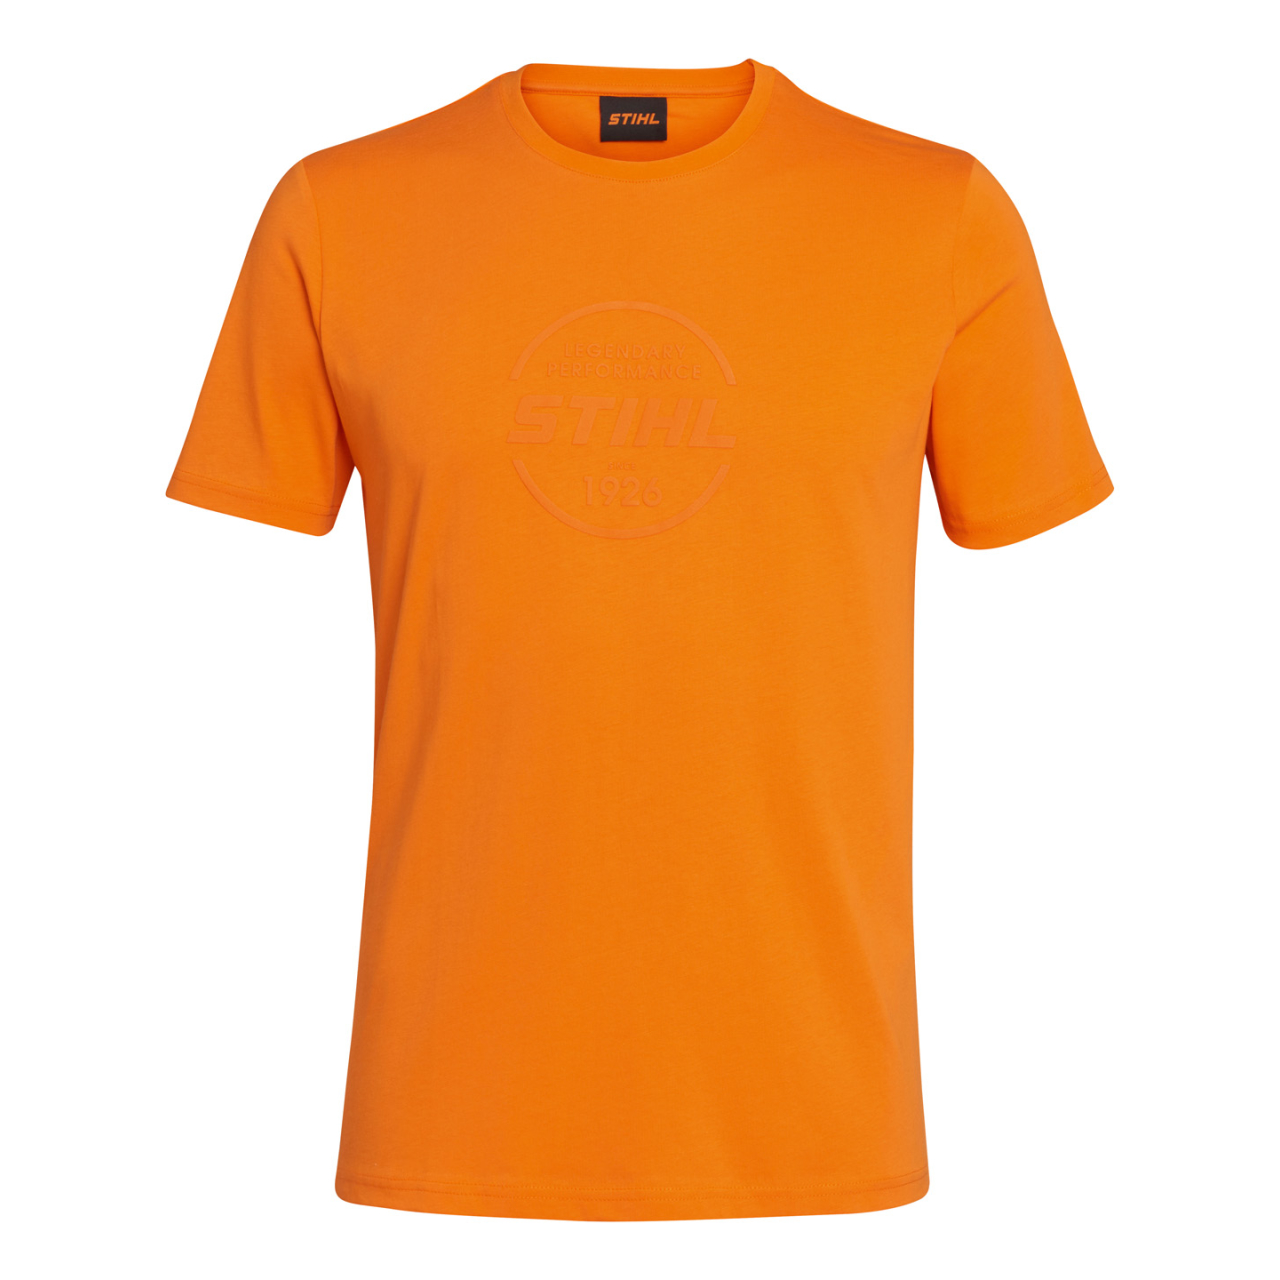 T-Shirt LOGO-CIRCLE orange Gr. XS